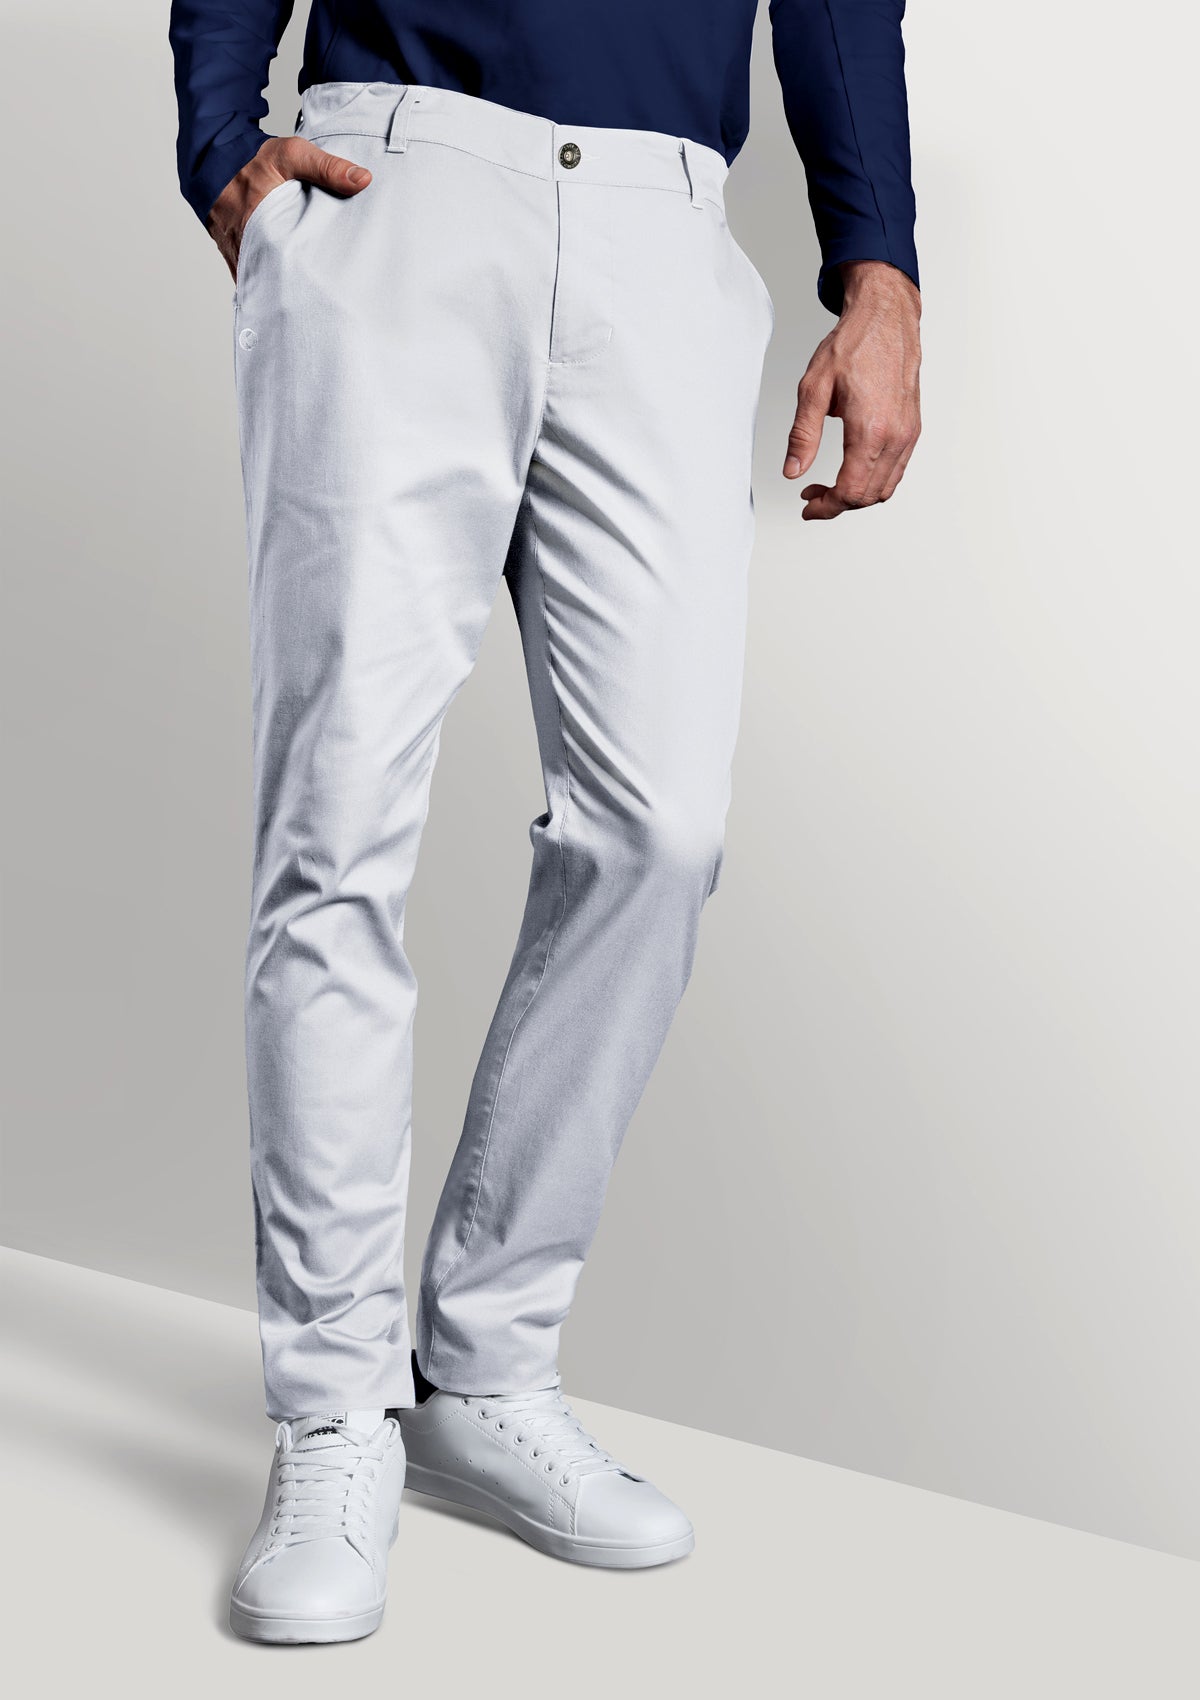 Men's 5-Pocket Chef Pants In Black or White